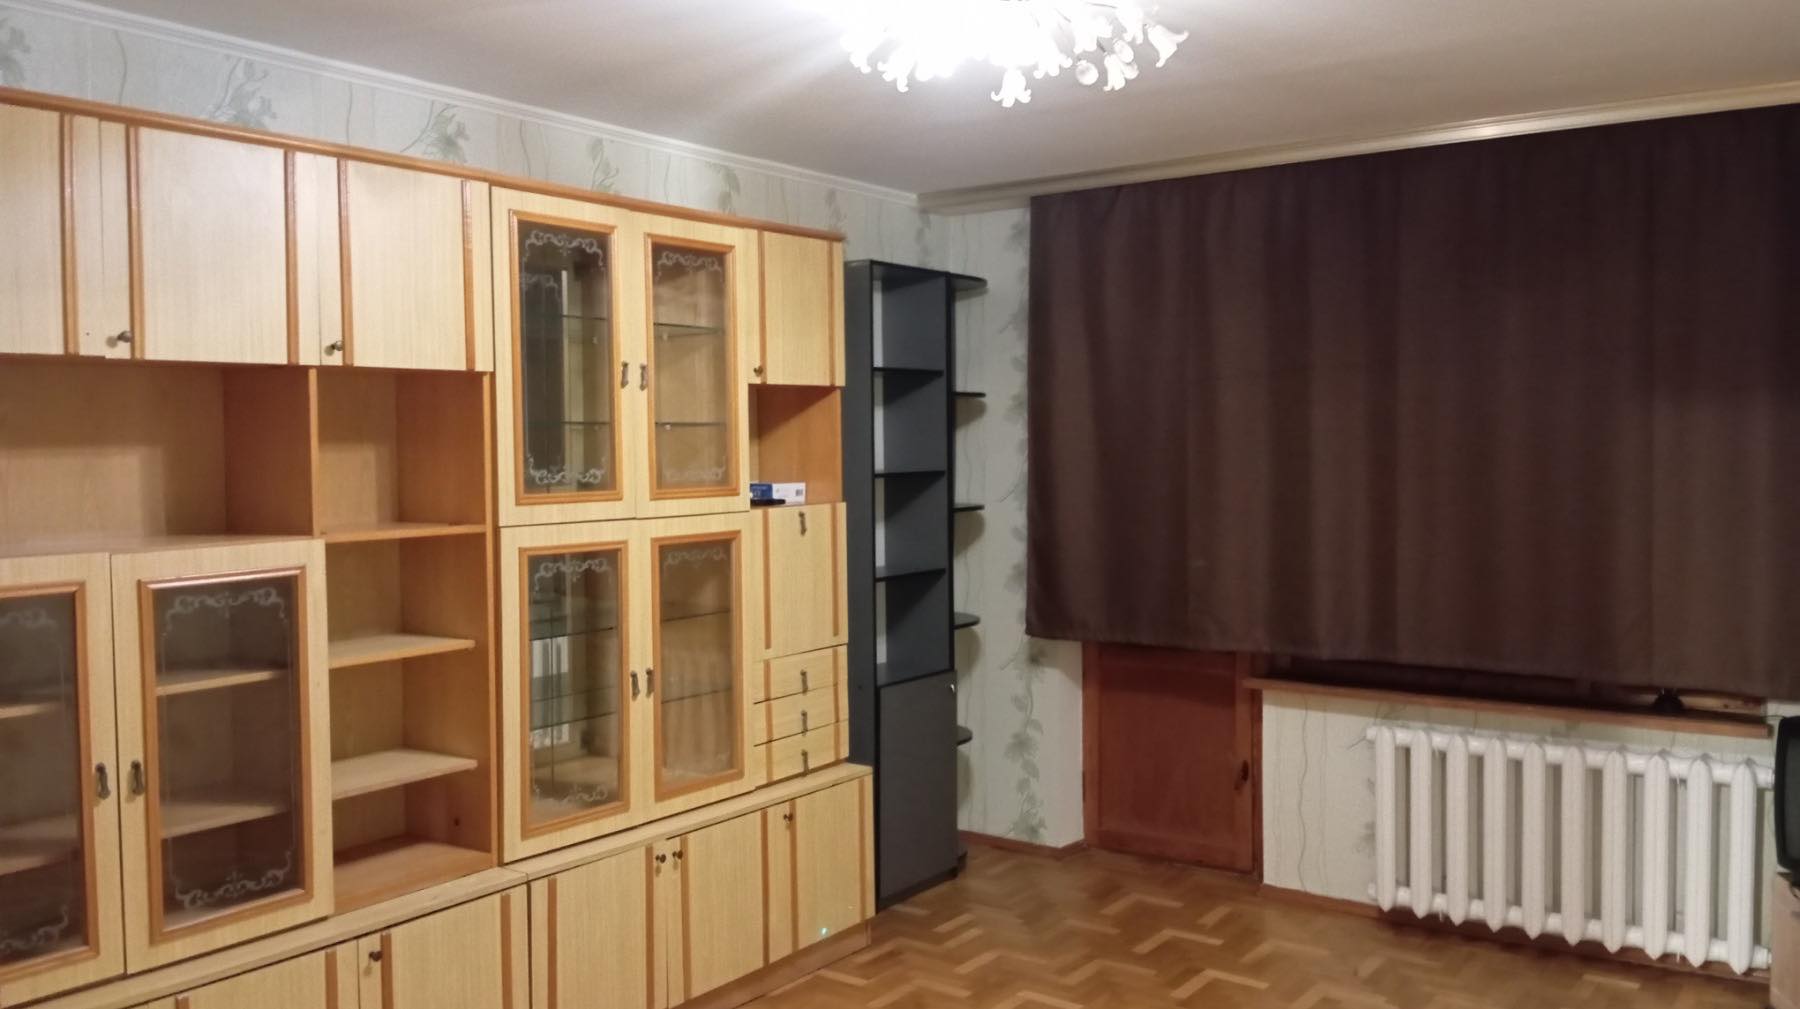 Пропоную зняти 1 кімнатну квартиру район Робоча, вул. Н.Алексєєнко.